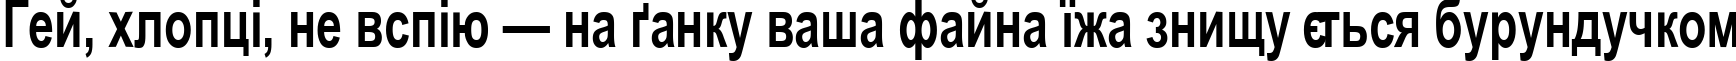 Пример написания шрифтом Arial Cyr70b текста на украинском